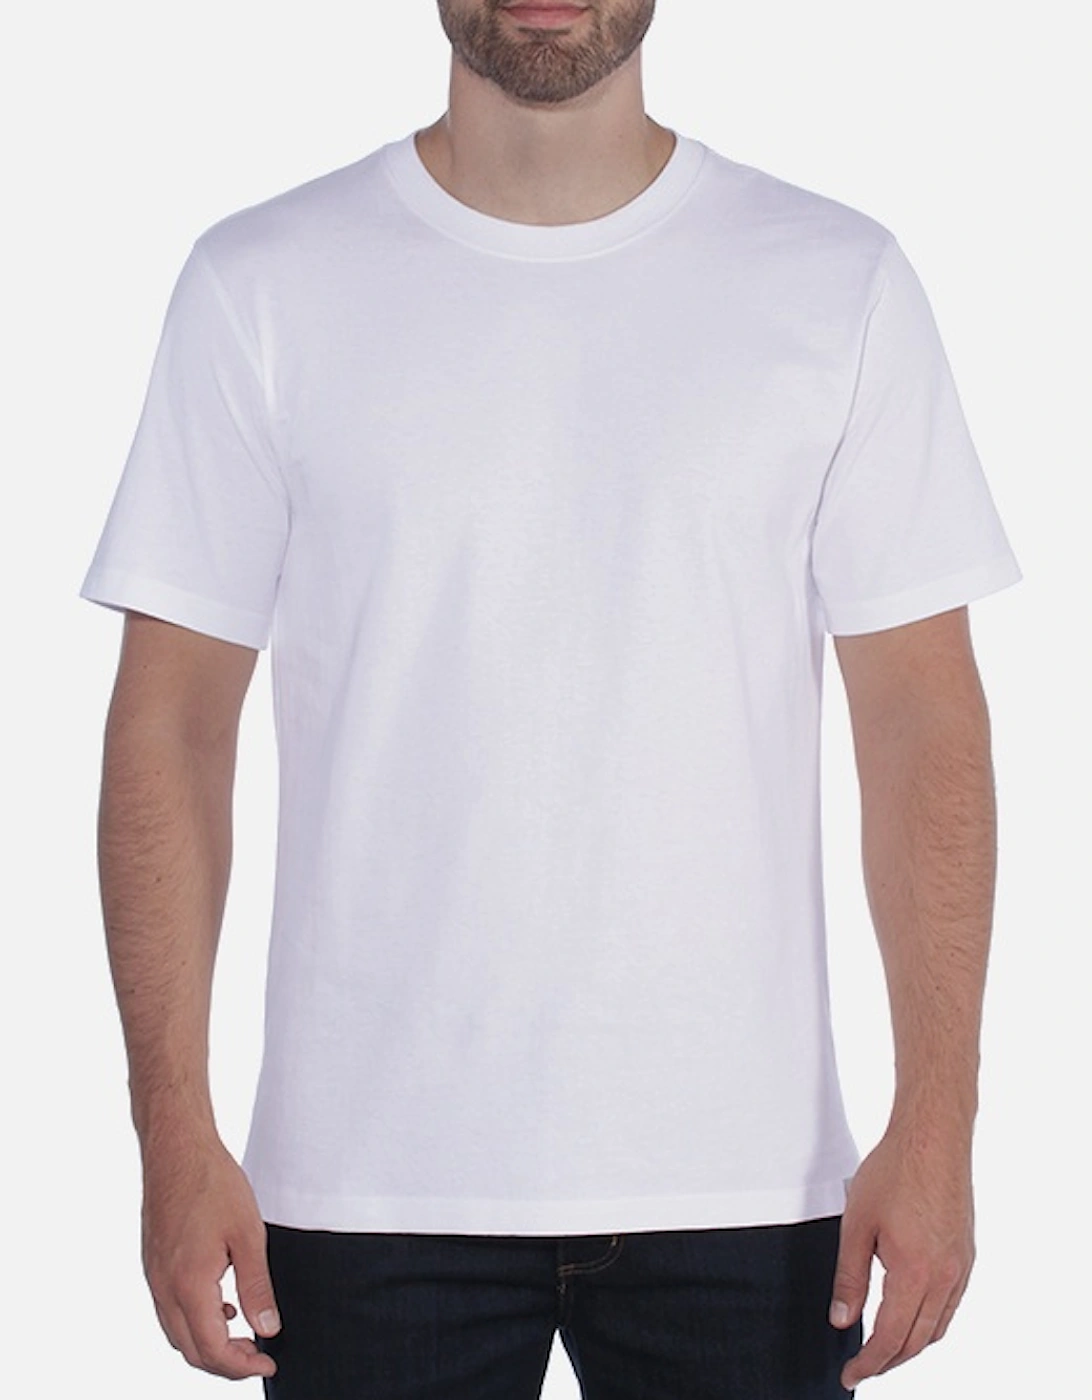 Carhartt Men's Relaxed Fit Heavyweight Short Sleeve T-Shirt White